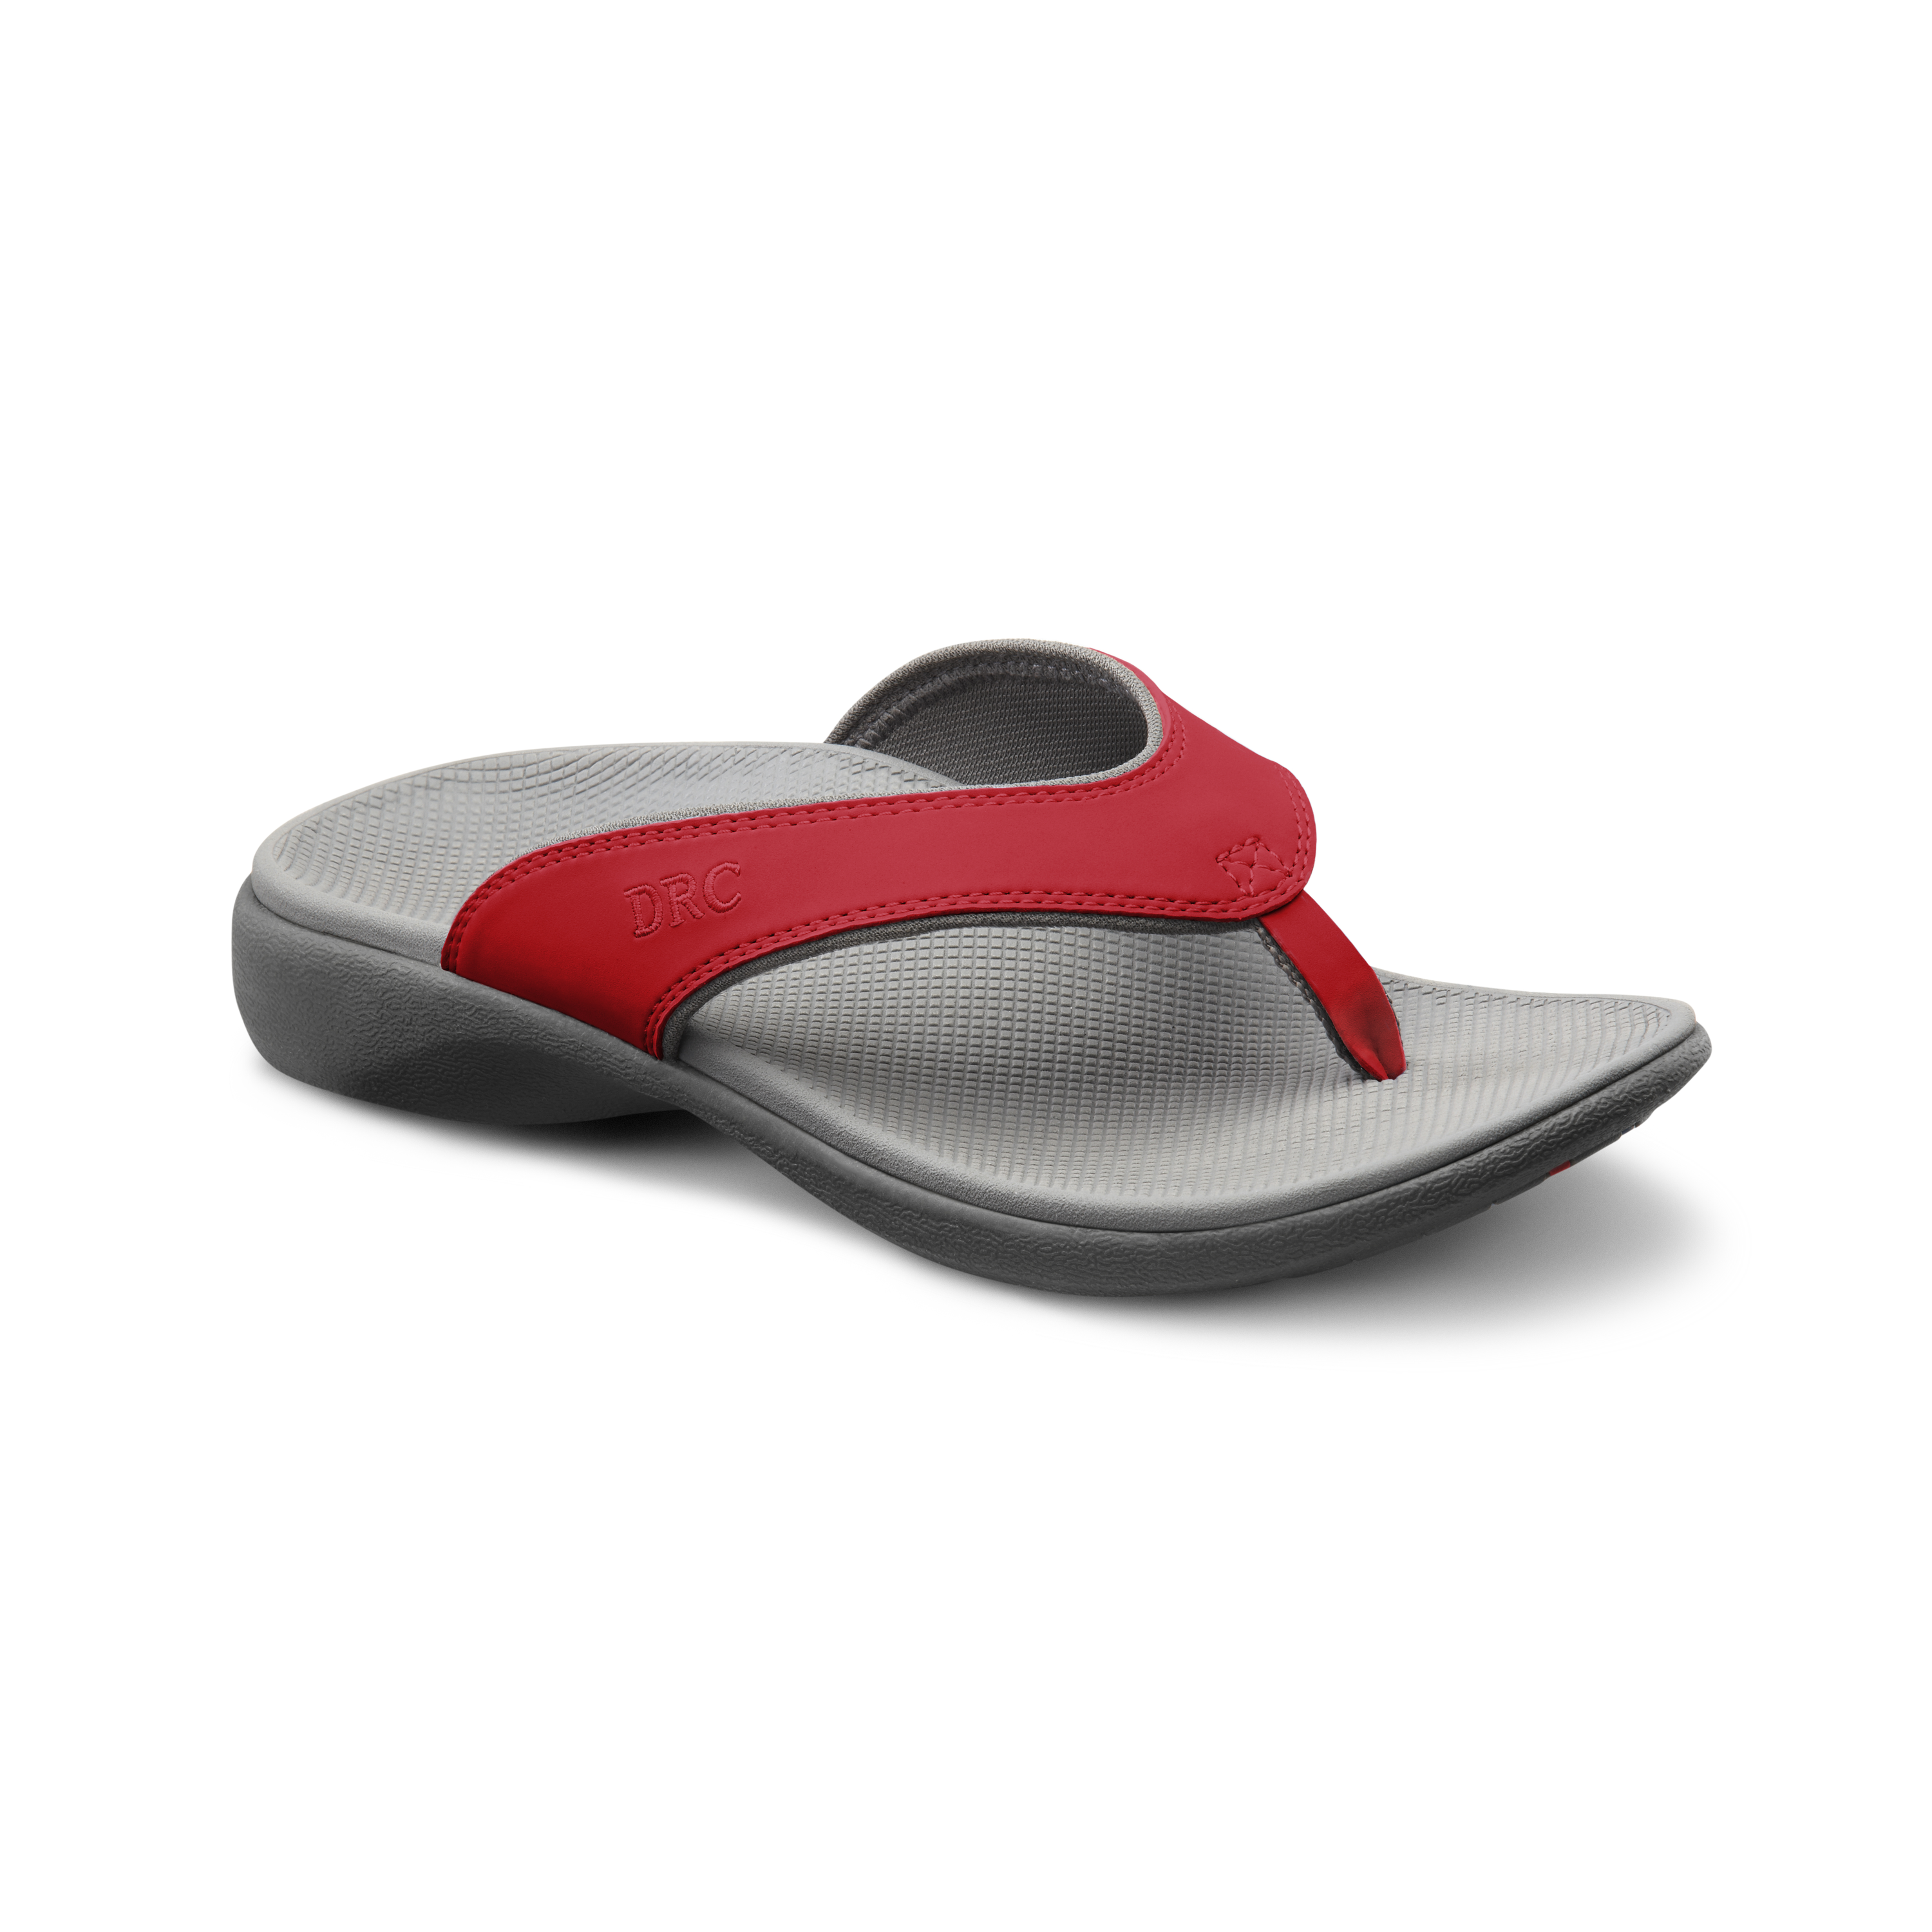 Produktbild DR. COMFORT® Shannon rot, Orthopädische Schuhe, Leichter Sommerschuh mit eingearbeitetem Fußbett für mehr Stabilität